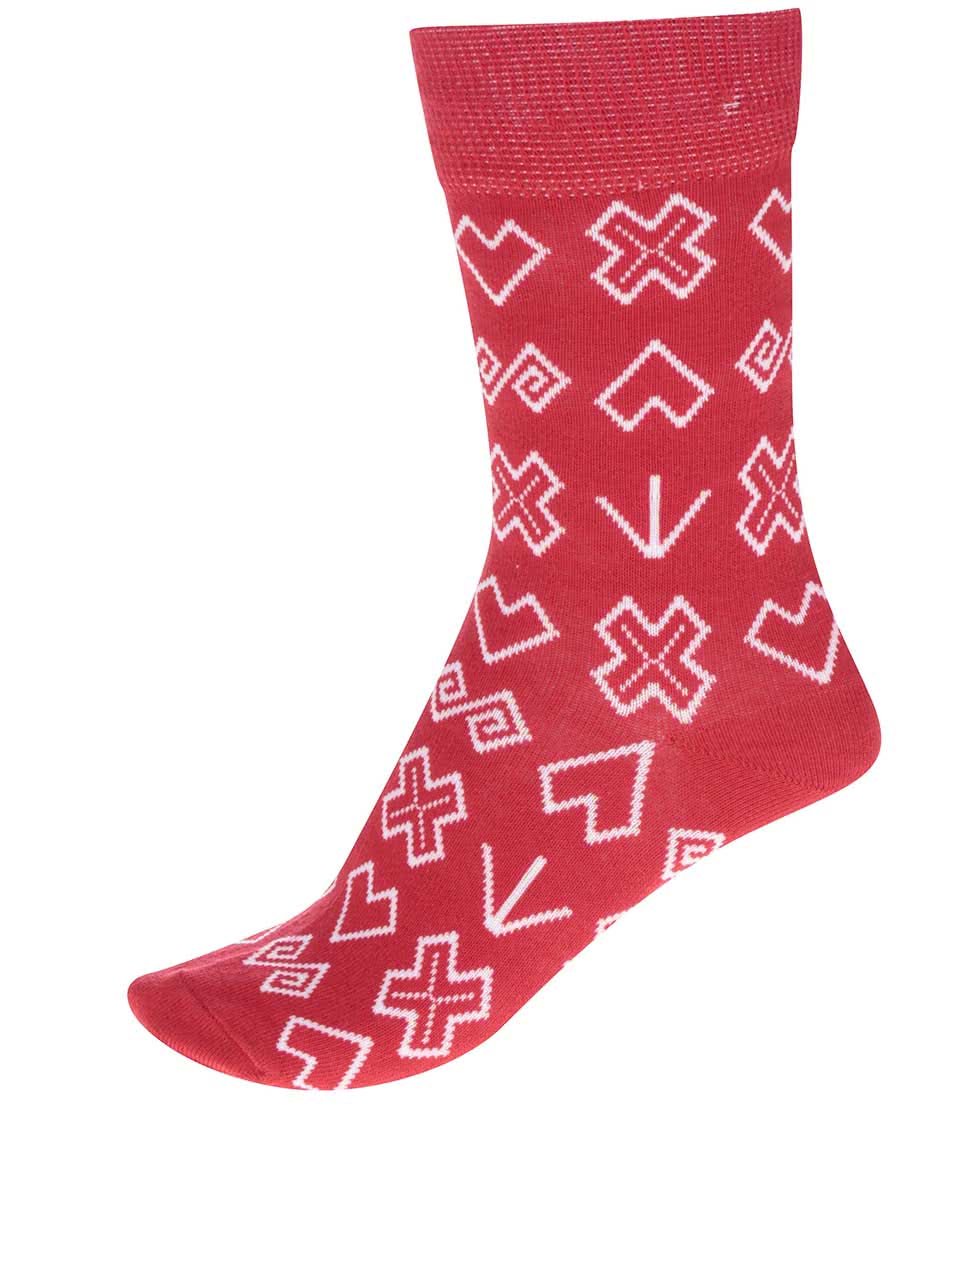 Červené dámské vzorované ponožky Puojd Šampiónky